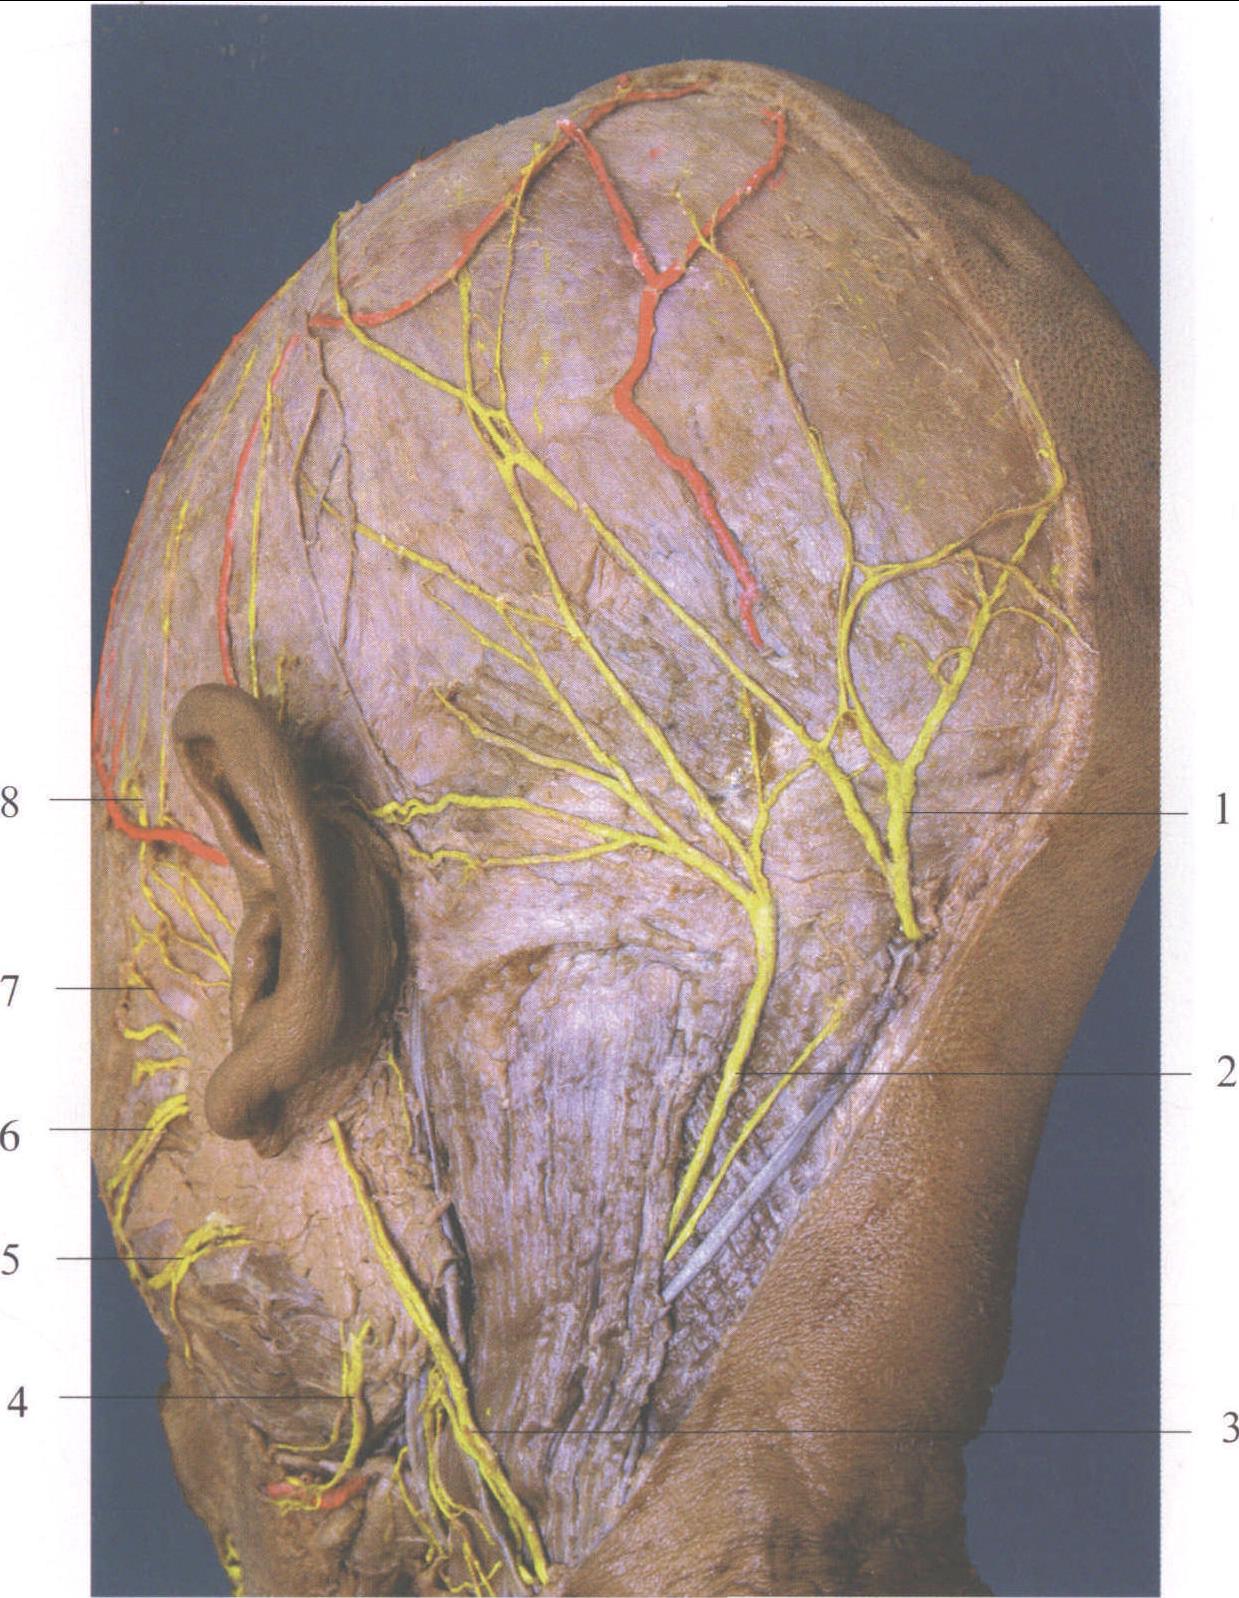 耳朵后面的神经分布图图片